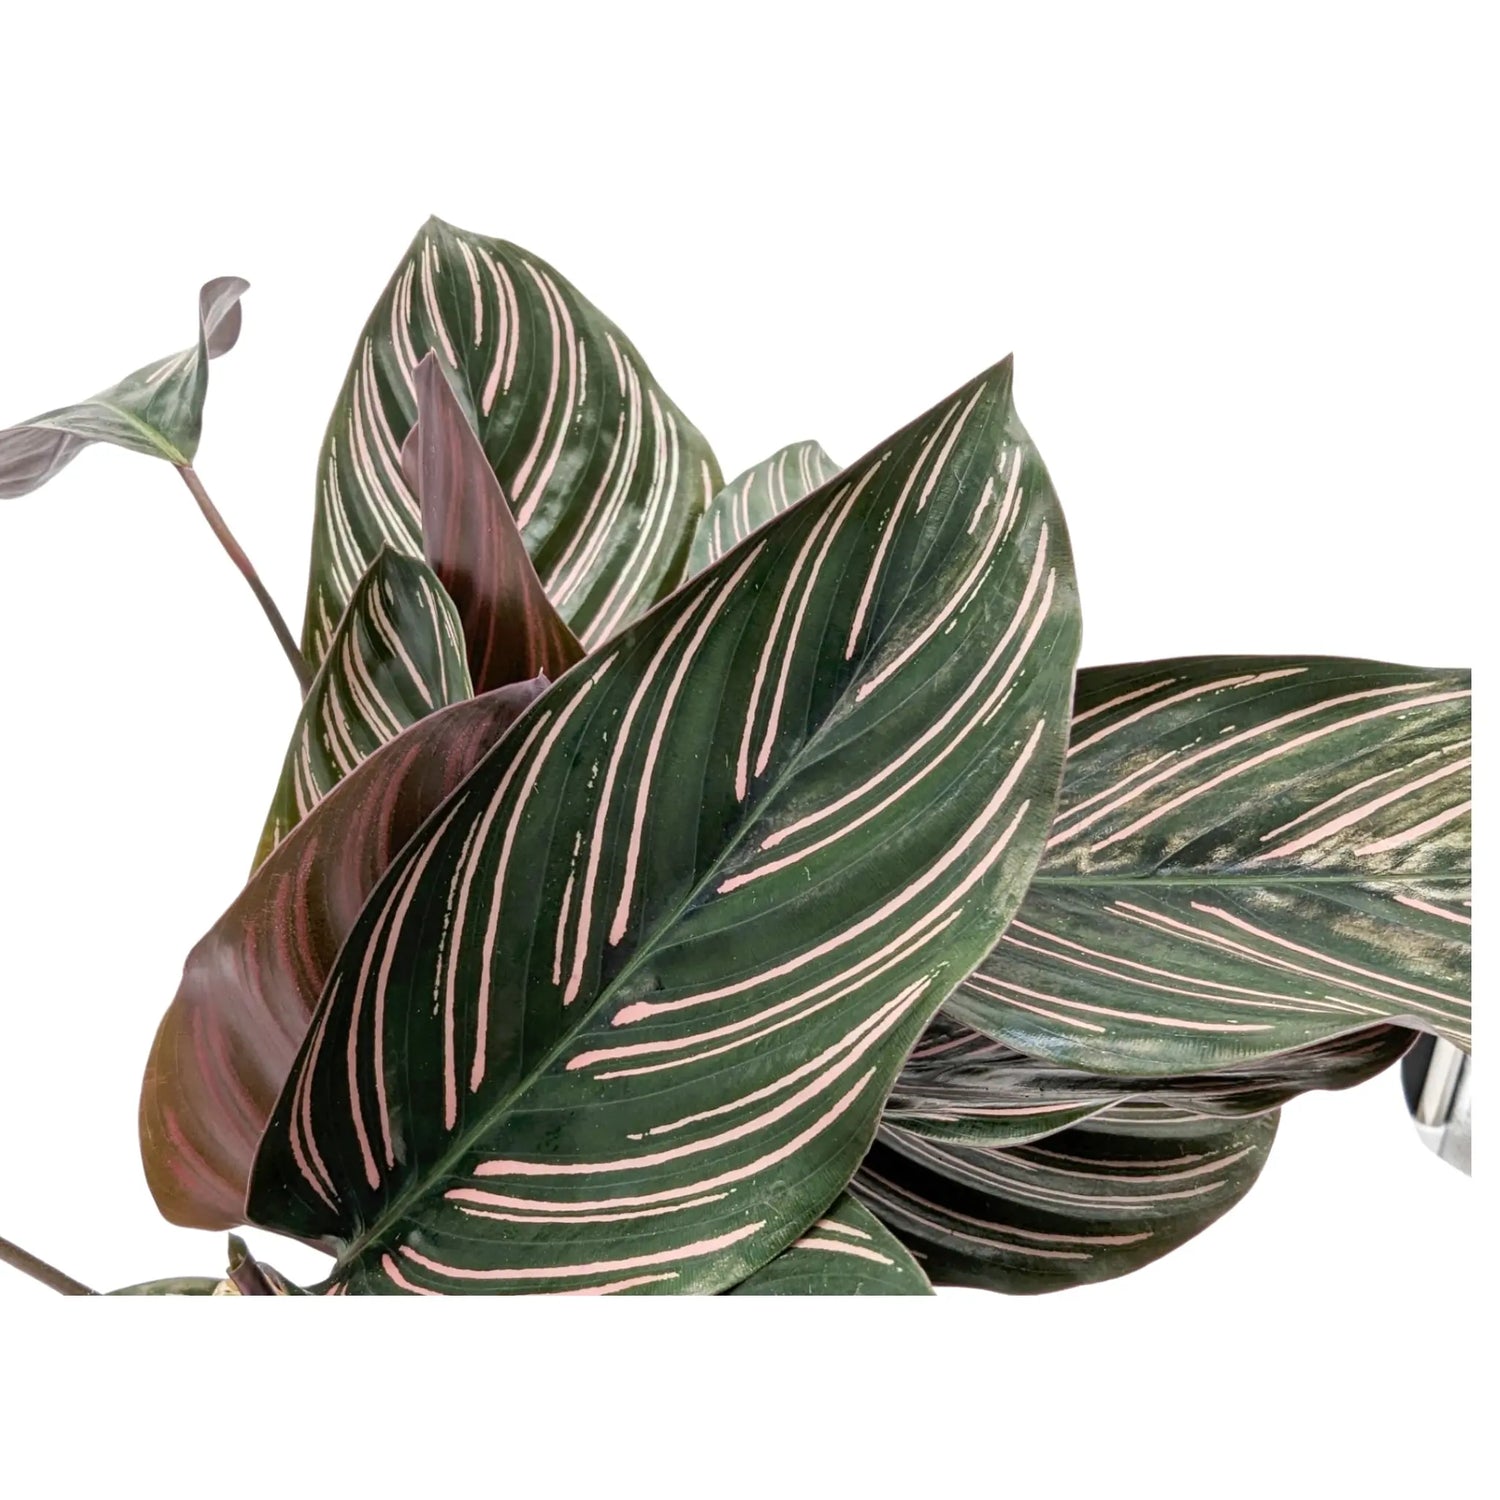 Calathea sanderiana Ornata - Pin Stripe Leaf Culture